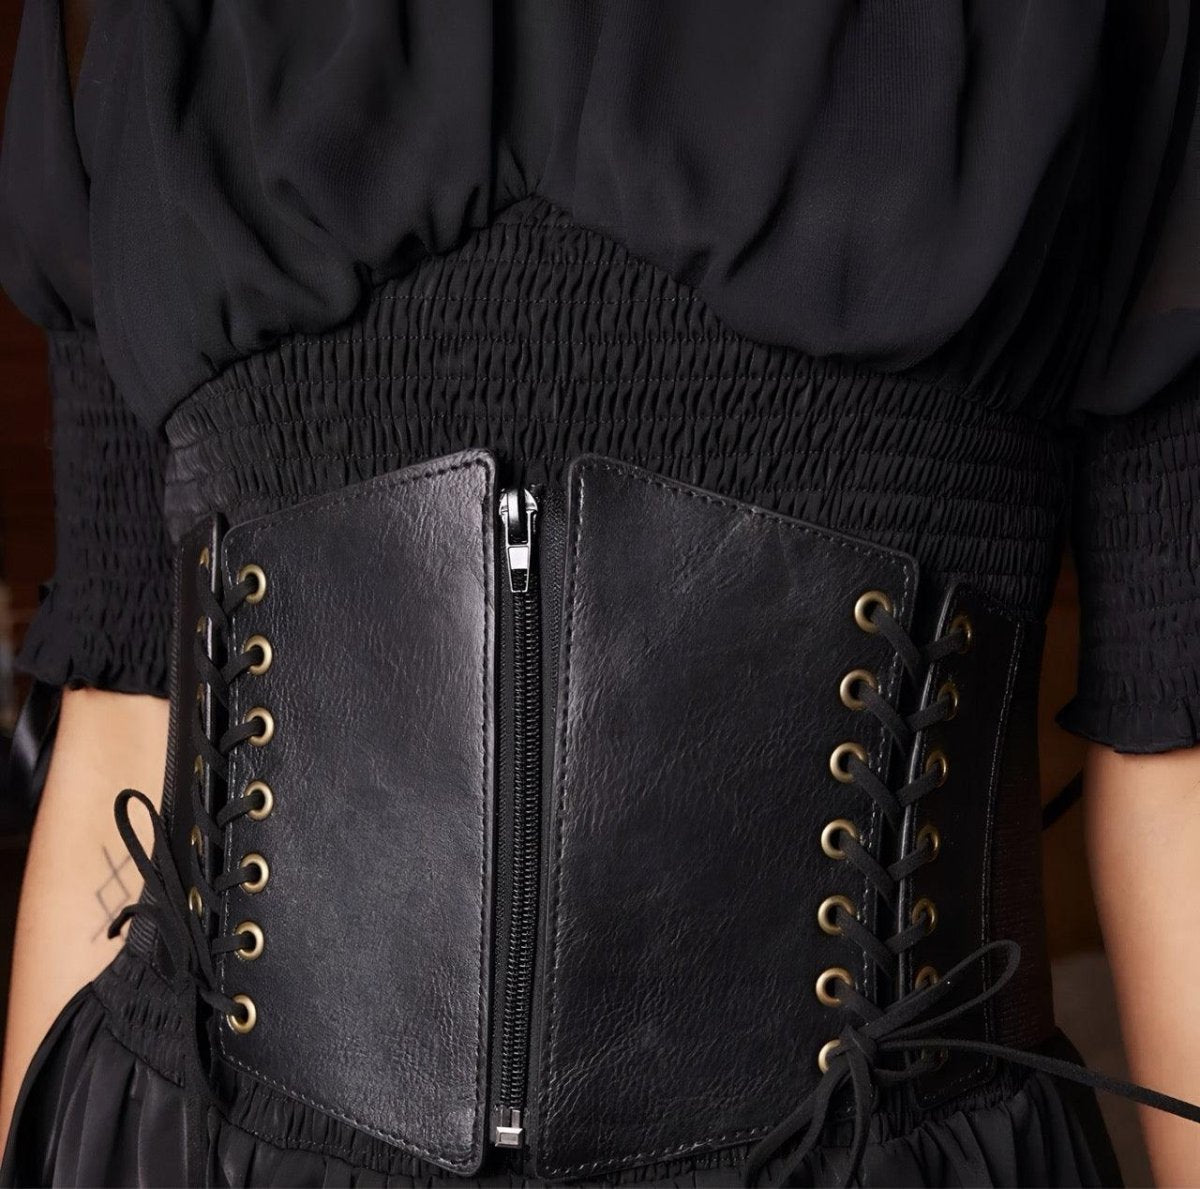 Ceinture corset à fermeture éclair et lacets sur les côtés, modèle Lexy - La Boutique de la Ceinture